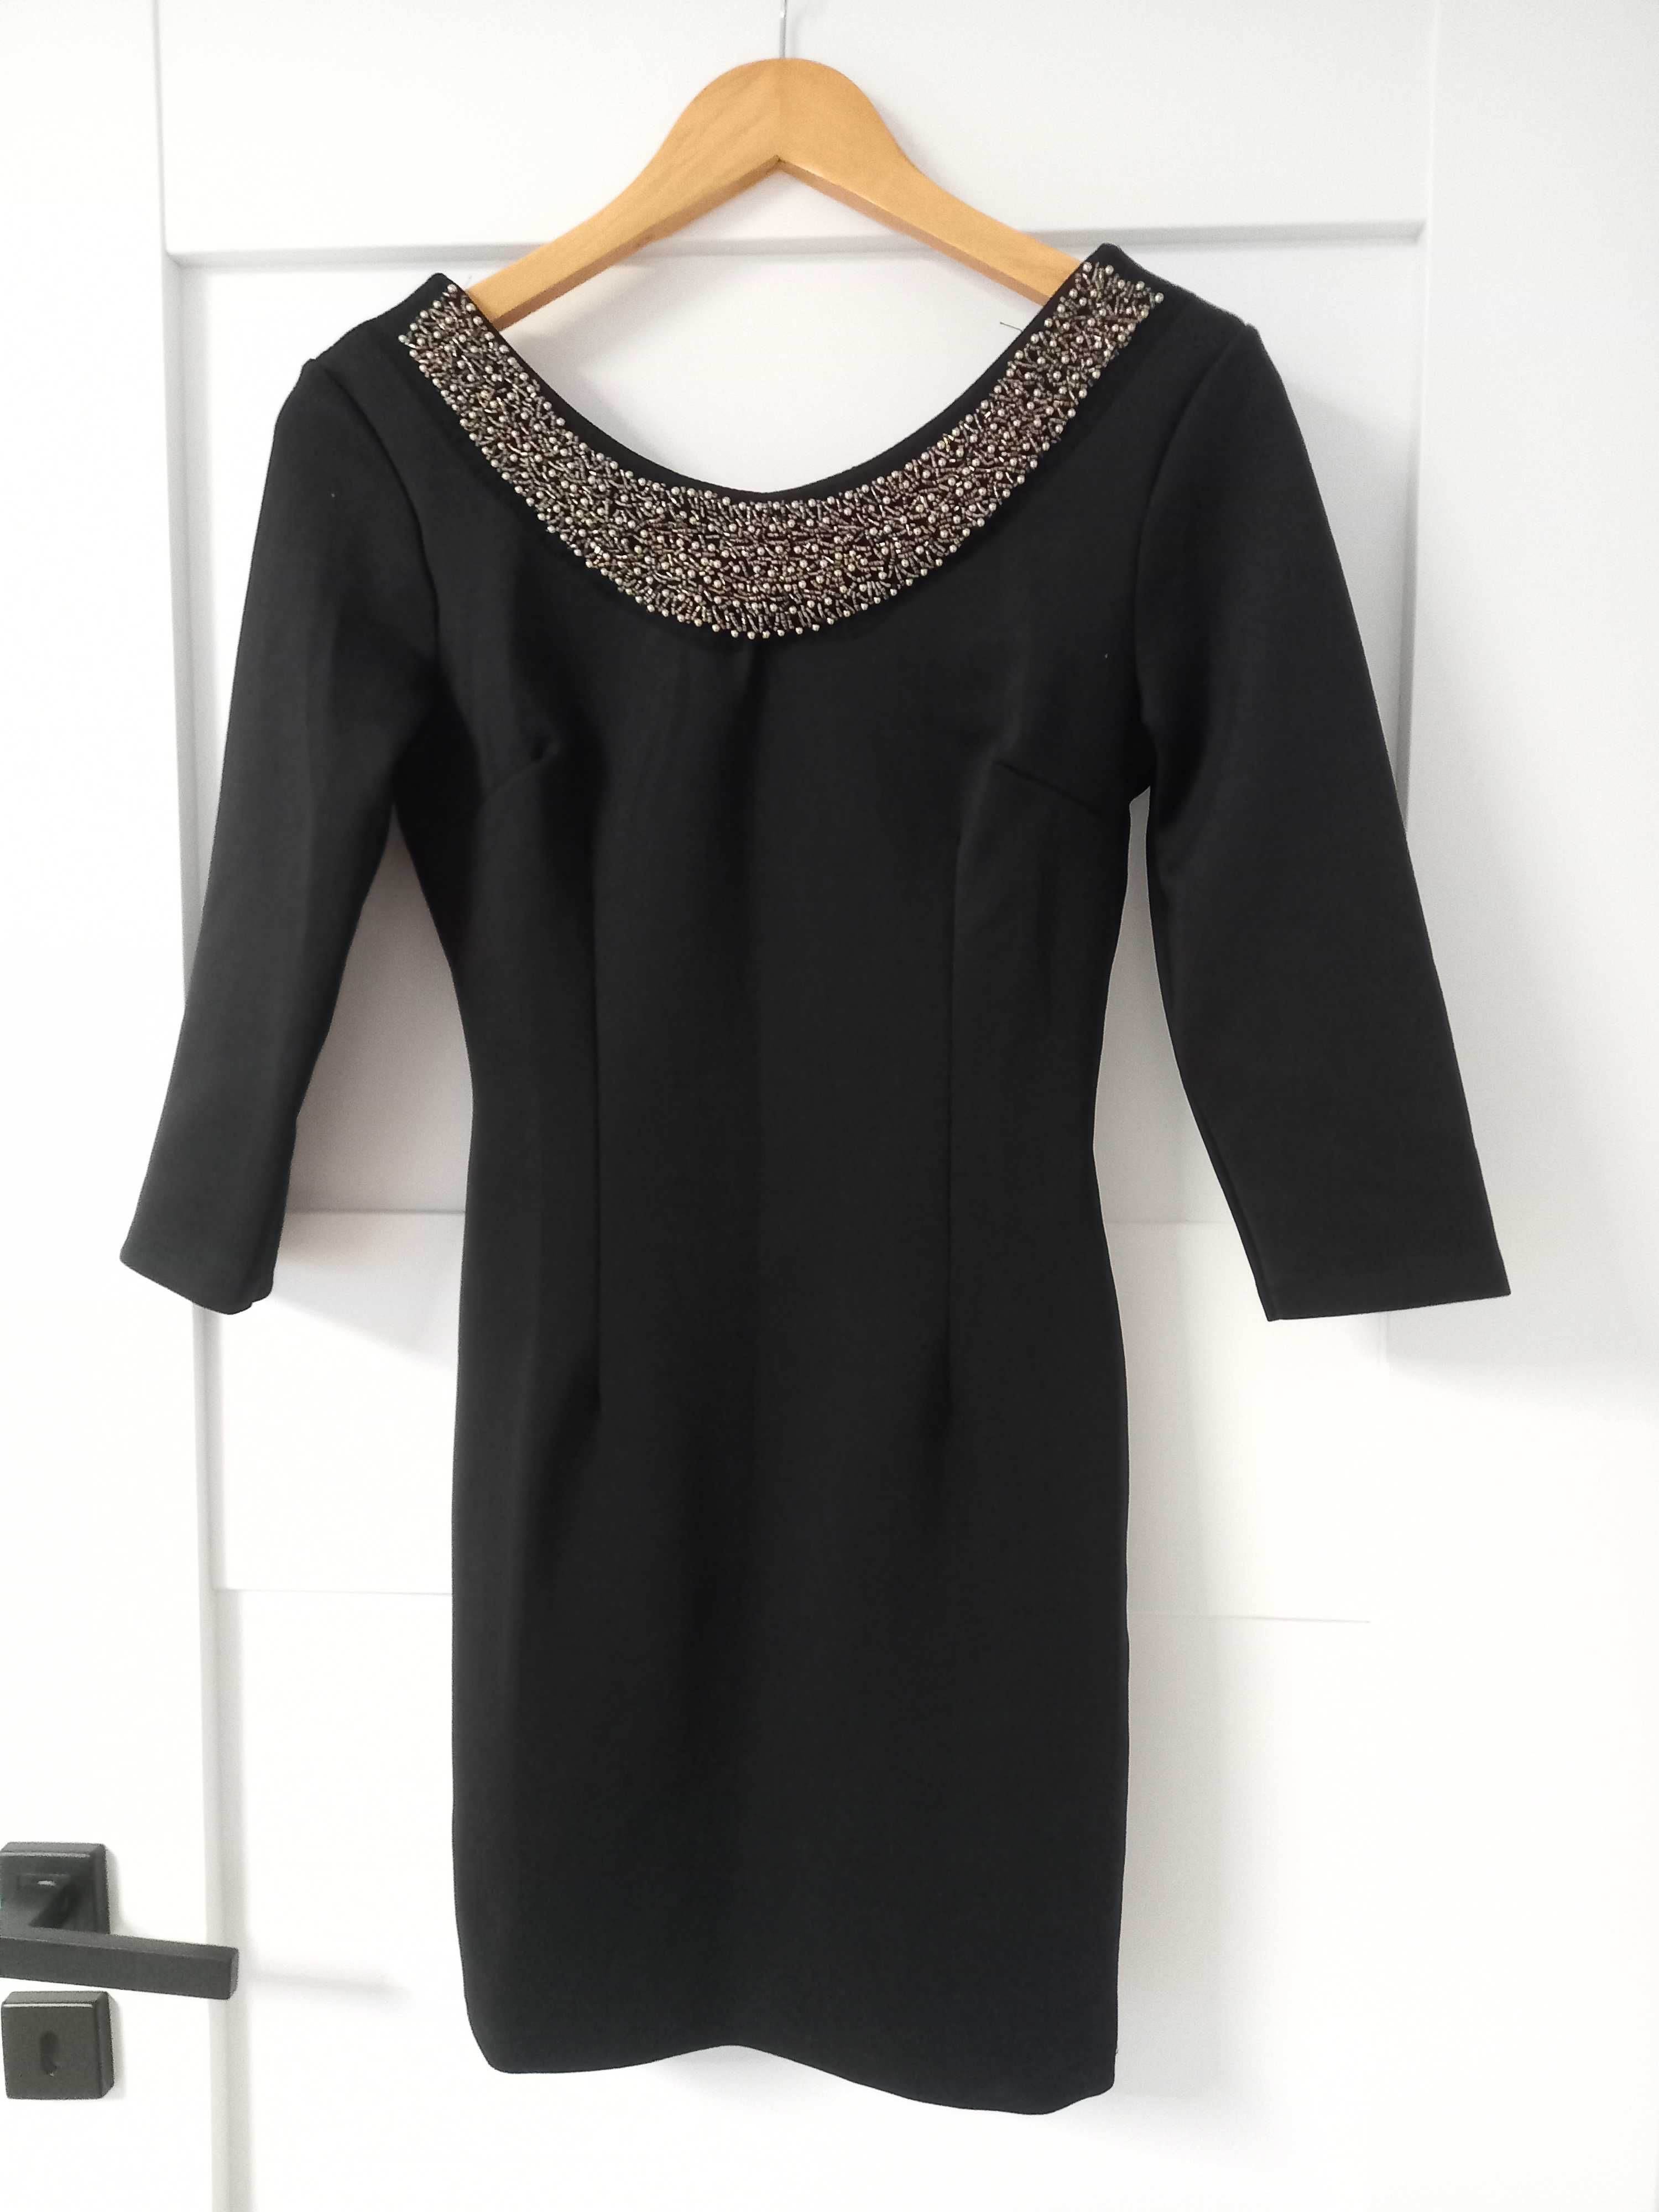 Mała czarna sukienka półmetek XS/S 34/36